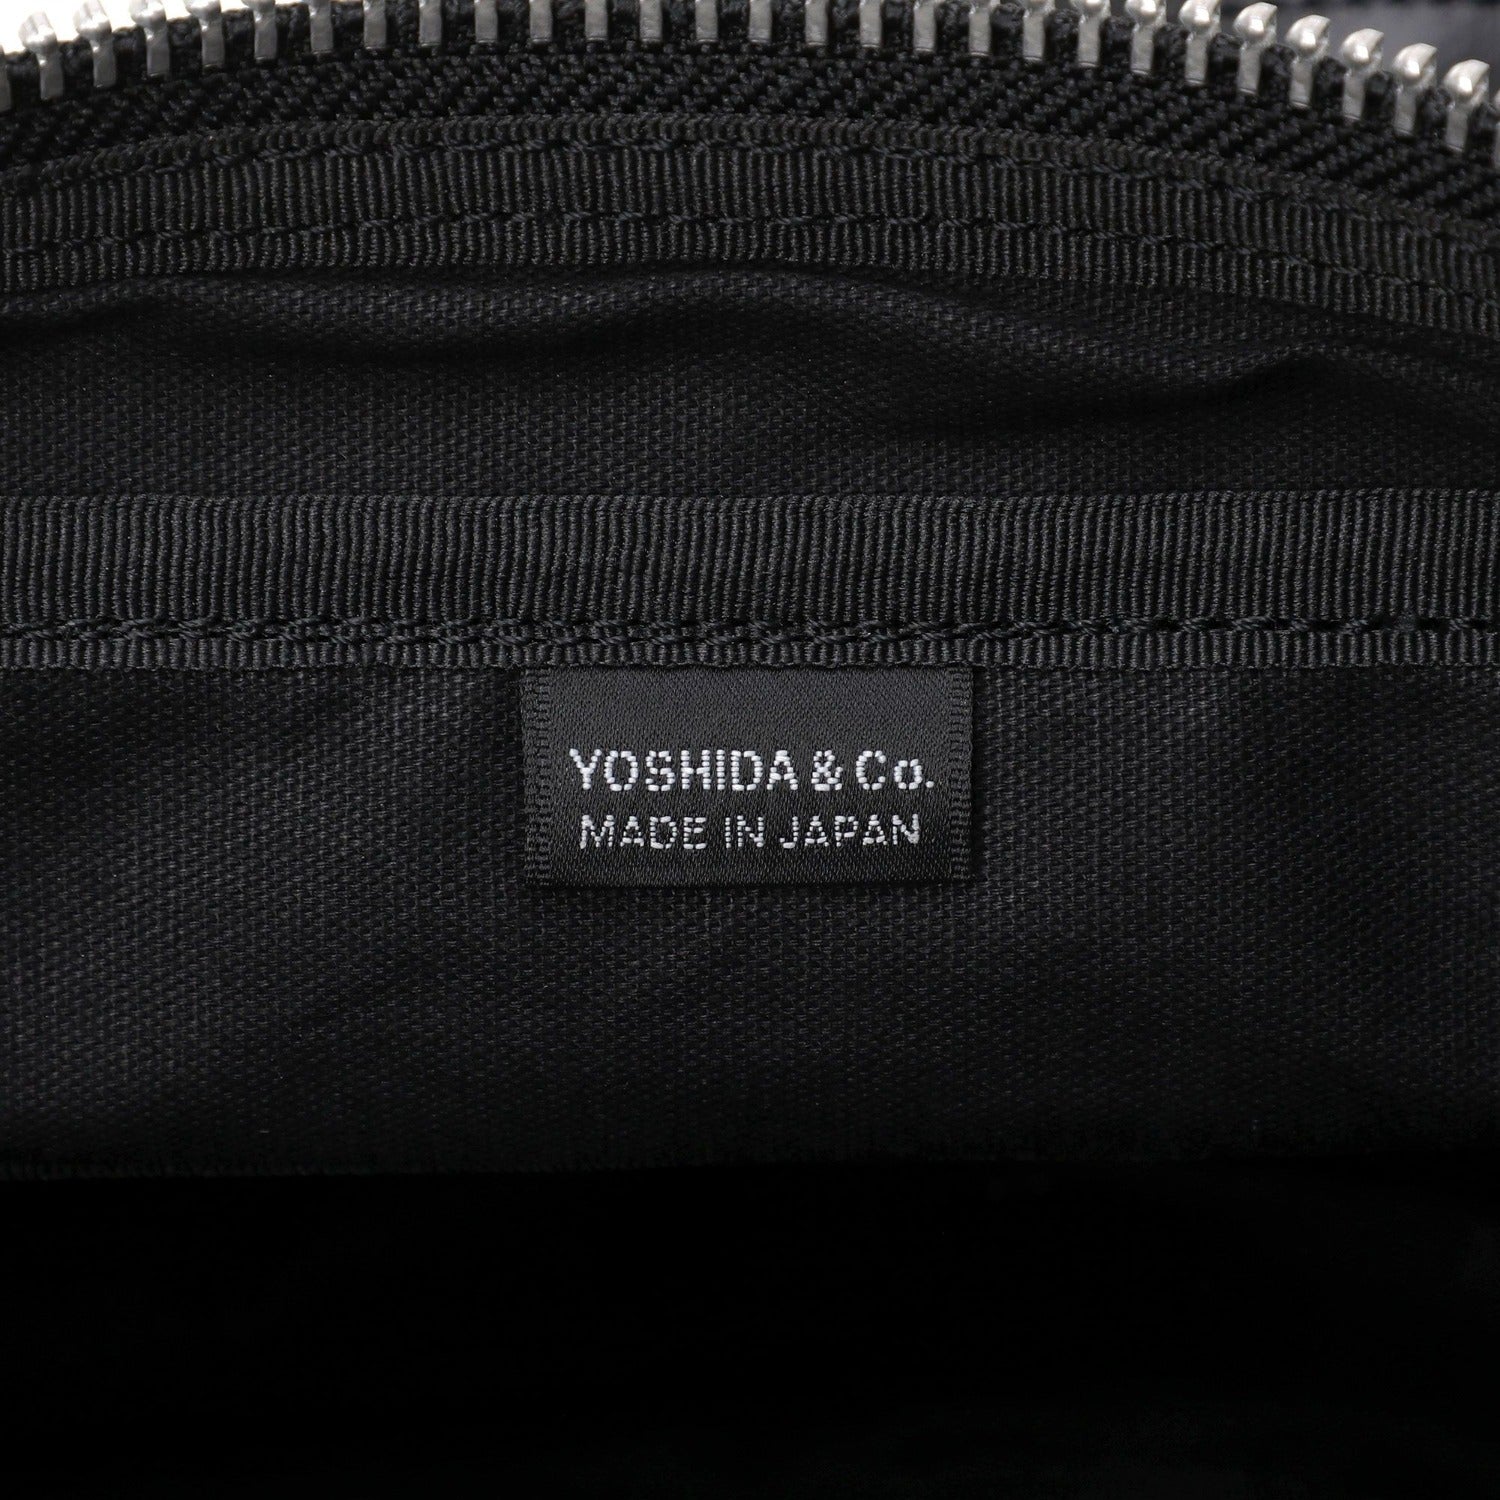 Porter Free Style Shoulder Bag Black - BAGS Canada